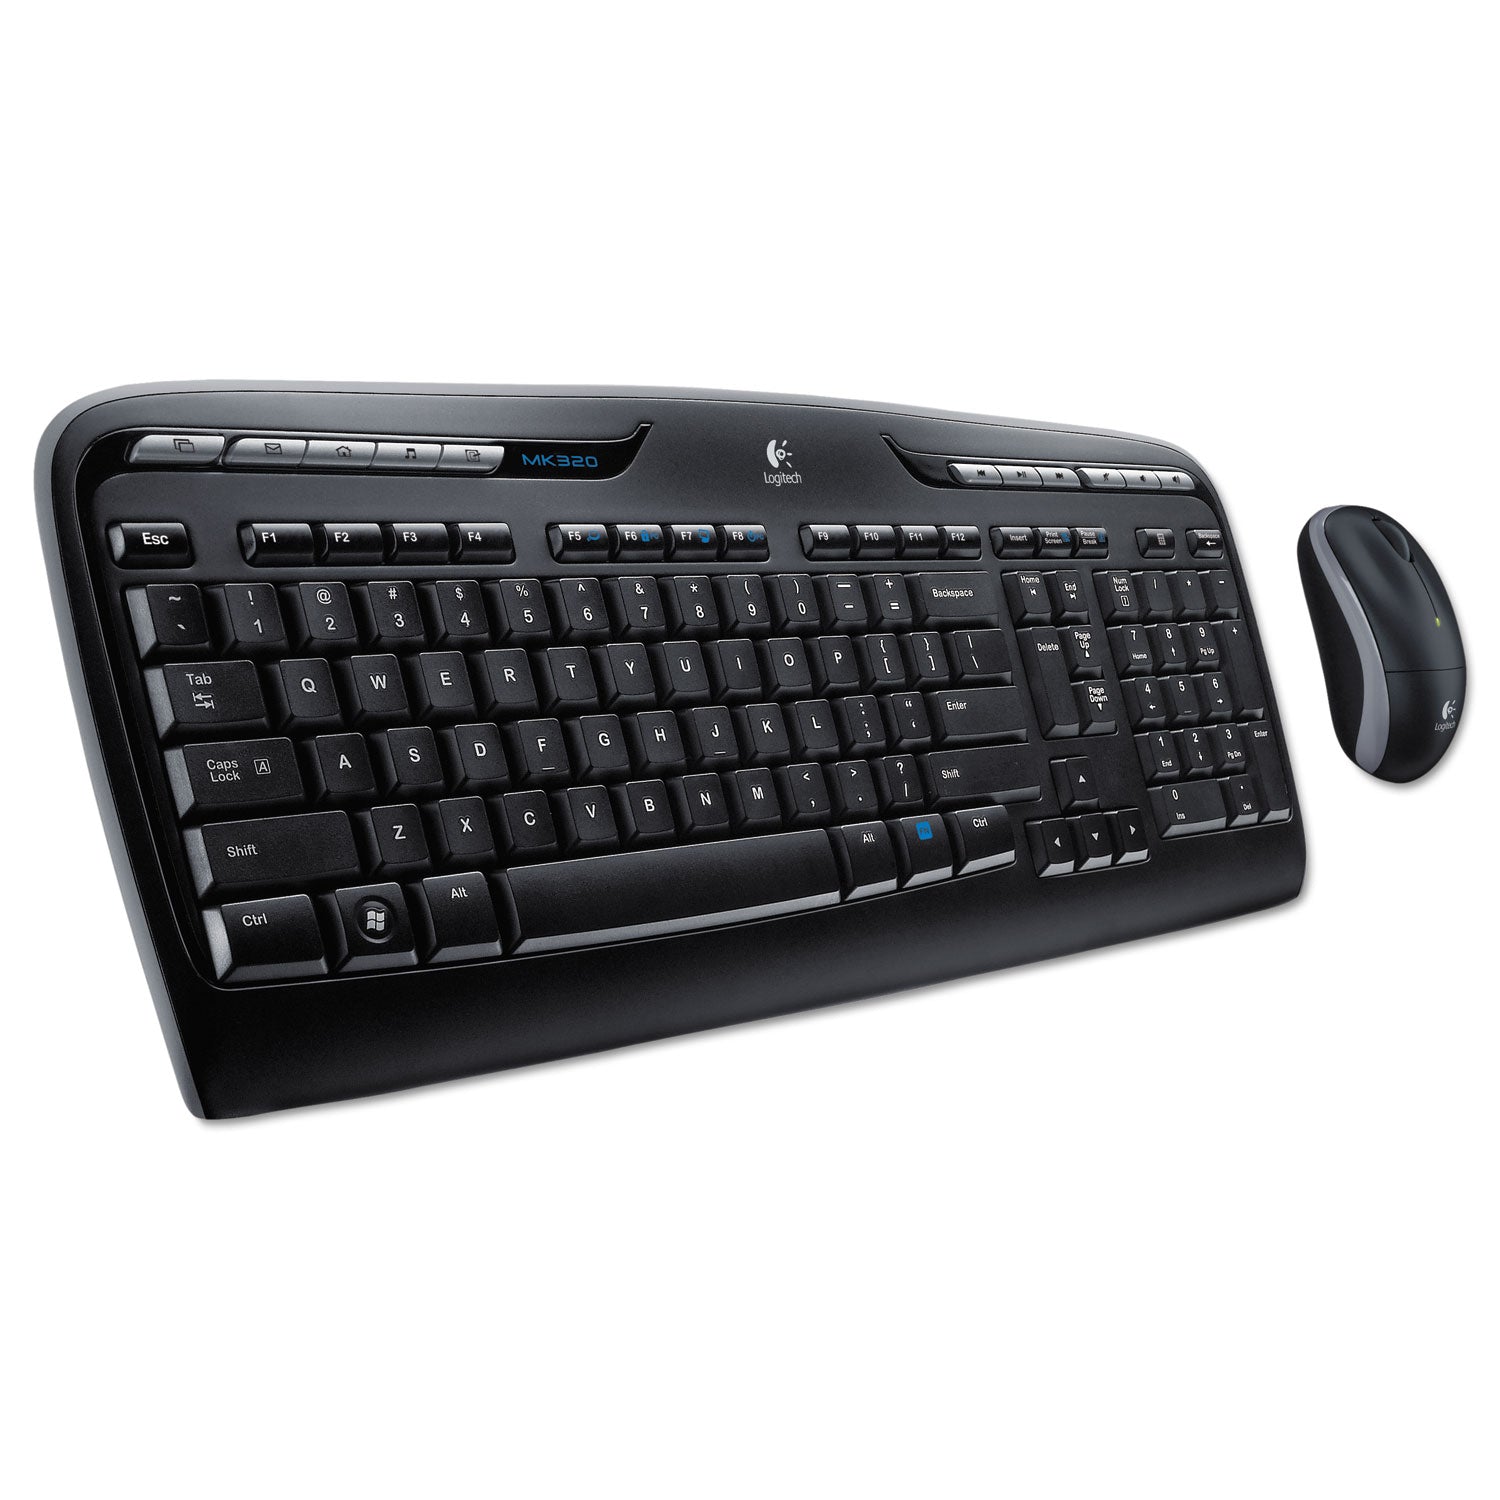 MK320 Wireless Keyboard + Mouse Combo, 2.4 GHz Frequency/30 ft Wireless Range, Black - 